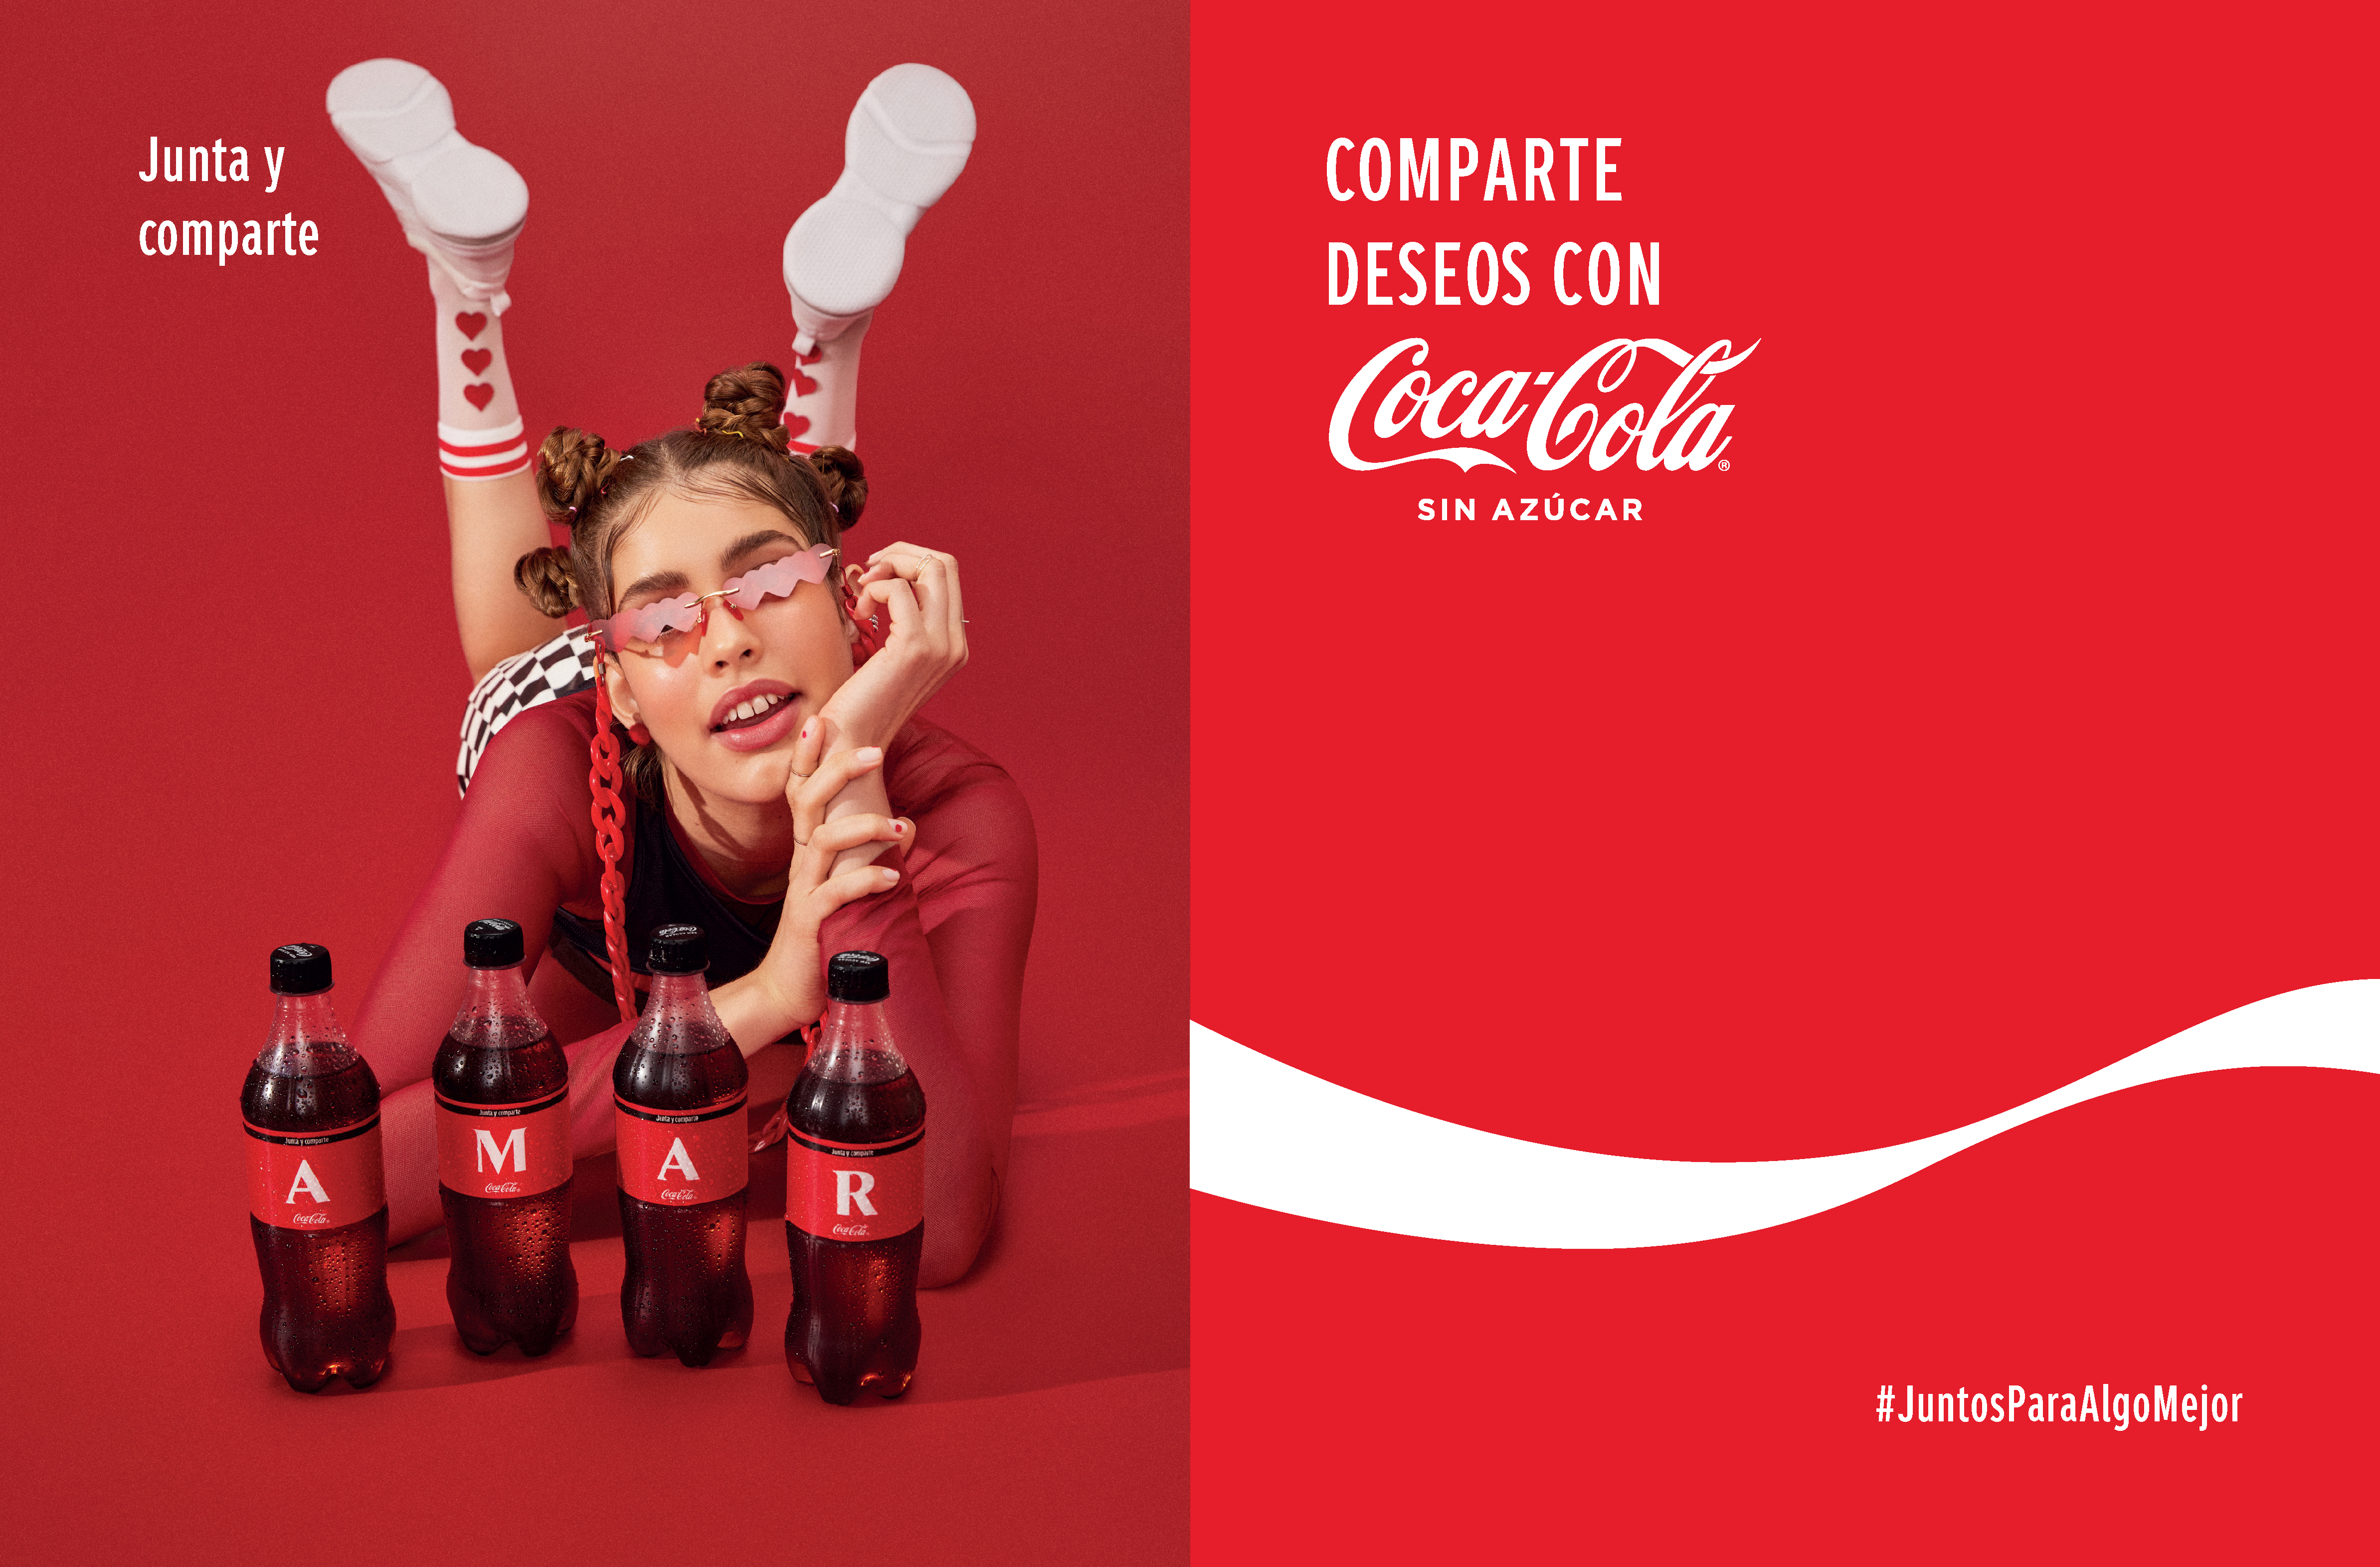 Coca-Cola invita a compartir mensajes positivos a través de sus etiquetas